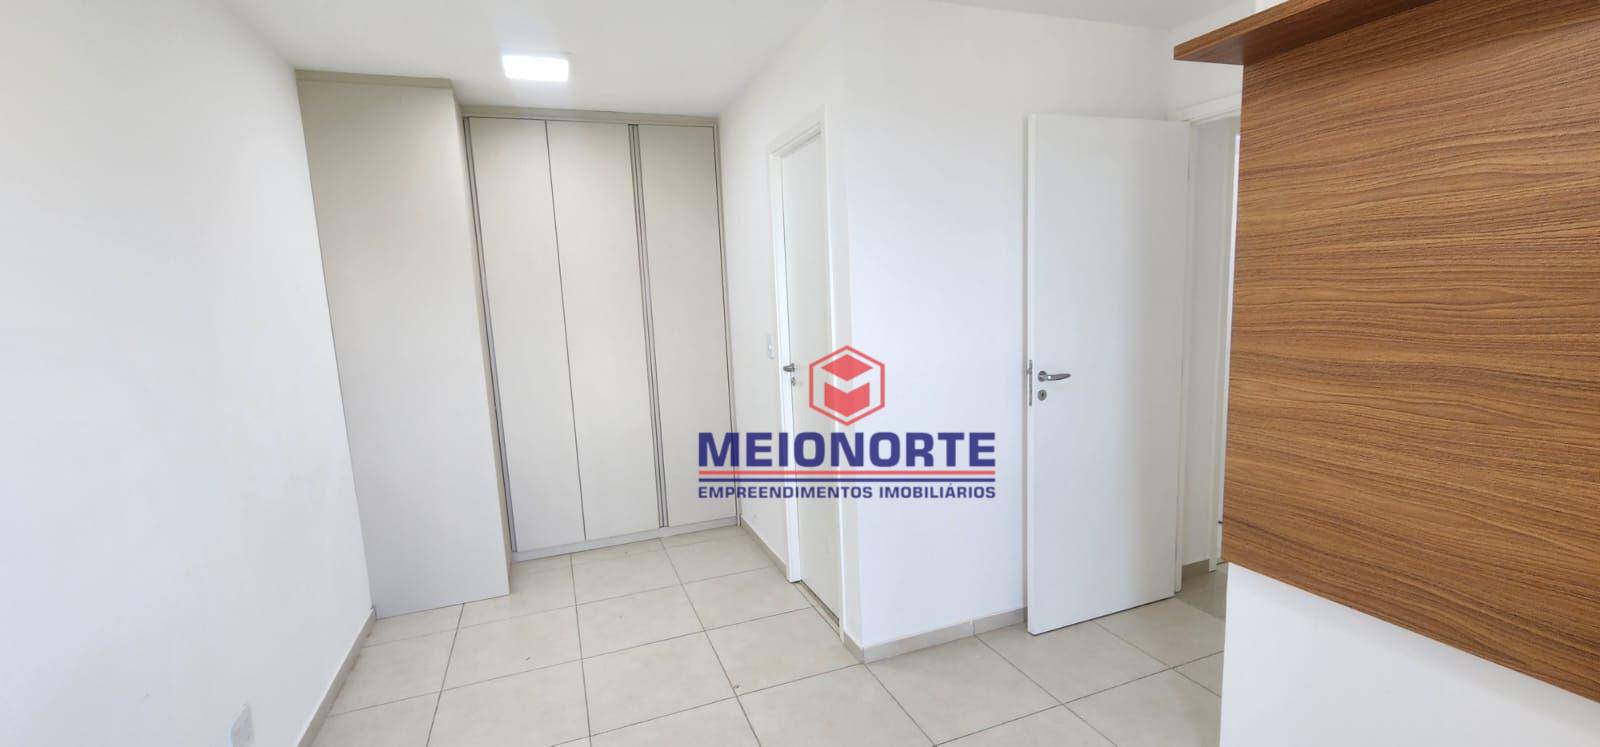 Apartamento, 2 quartos, 67 m² - Foto 3